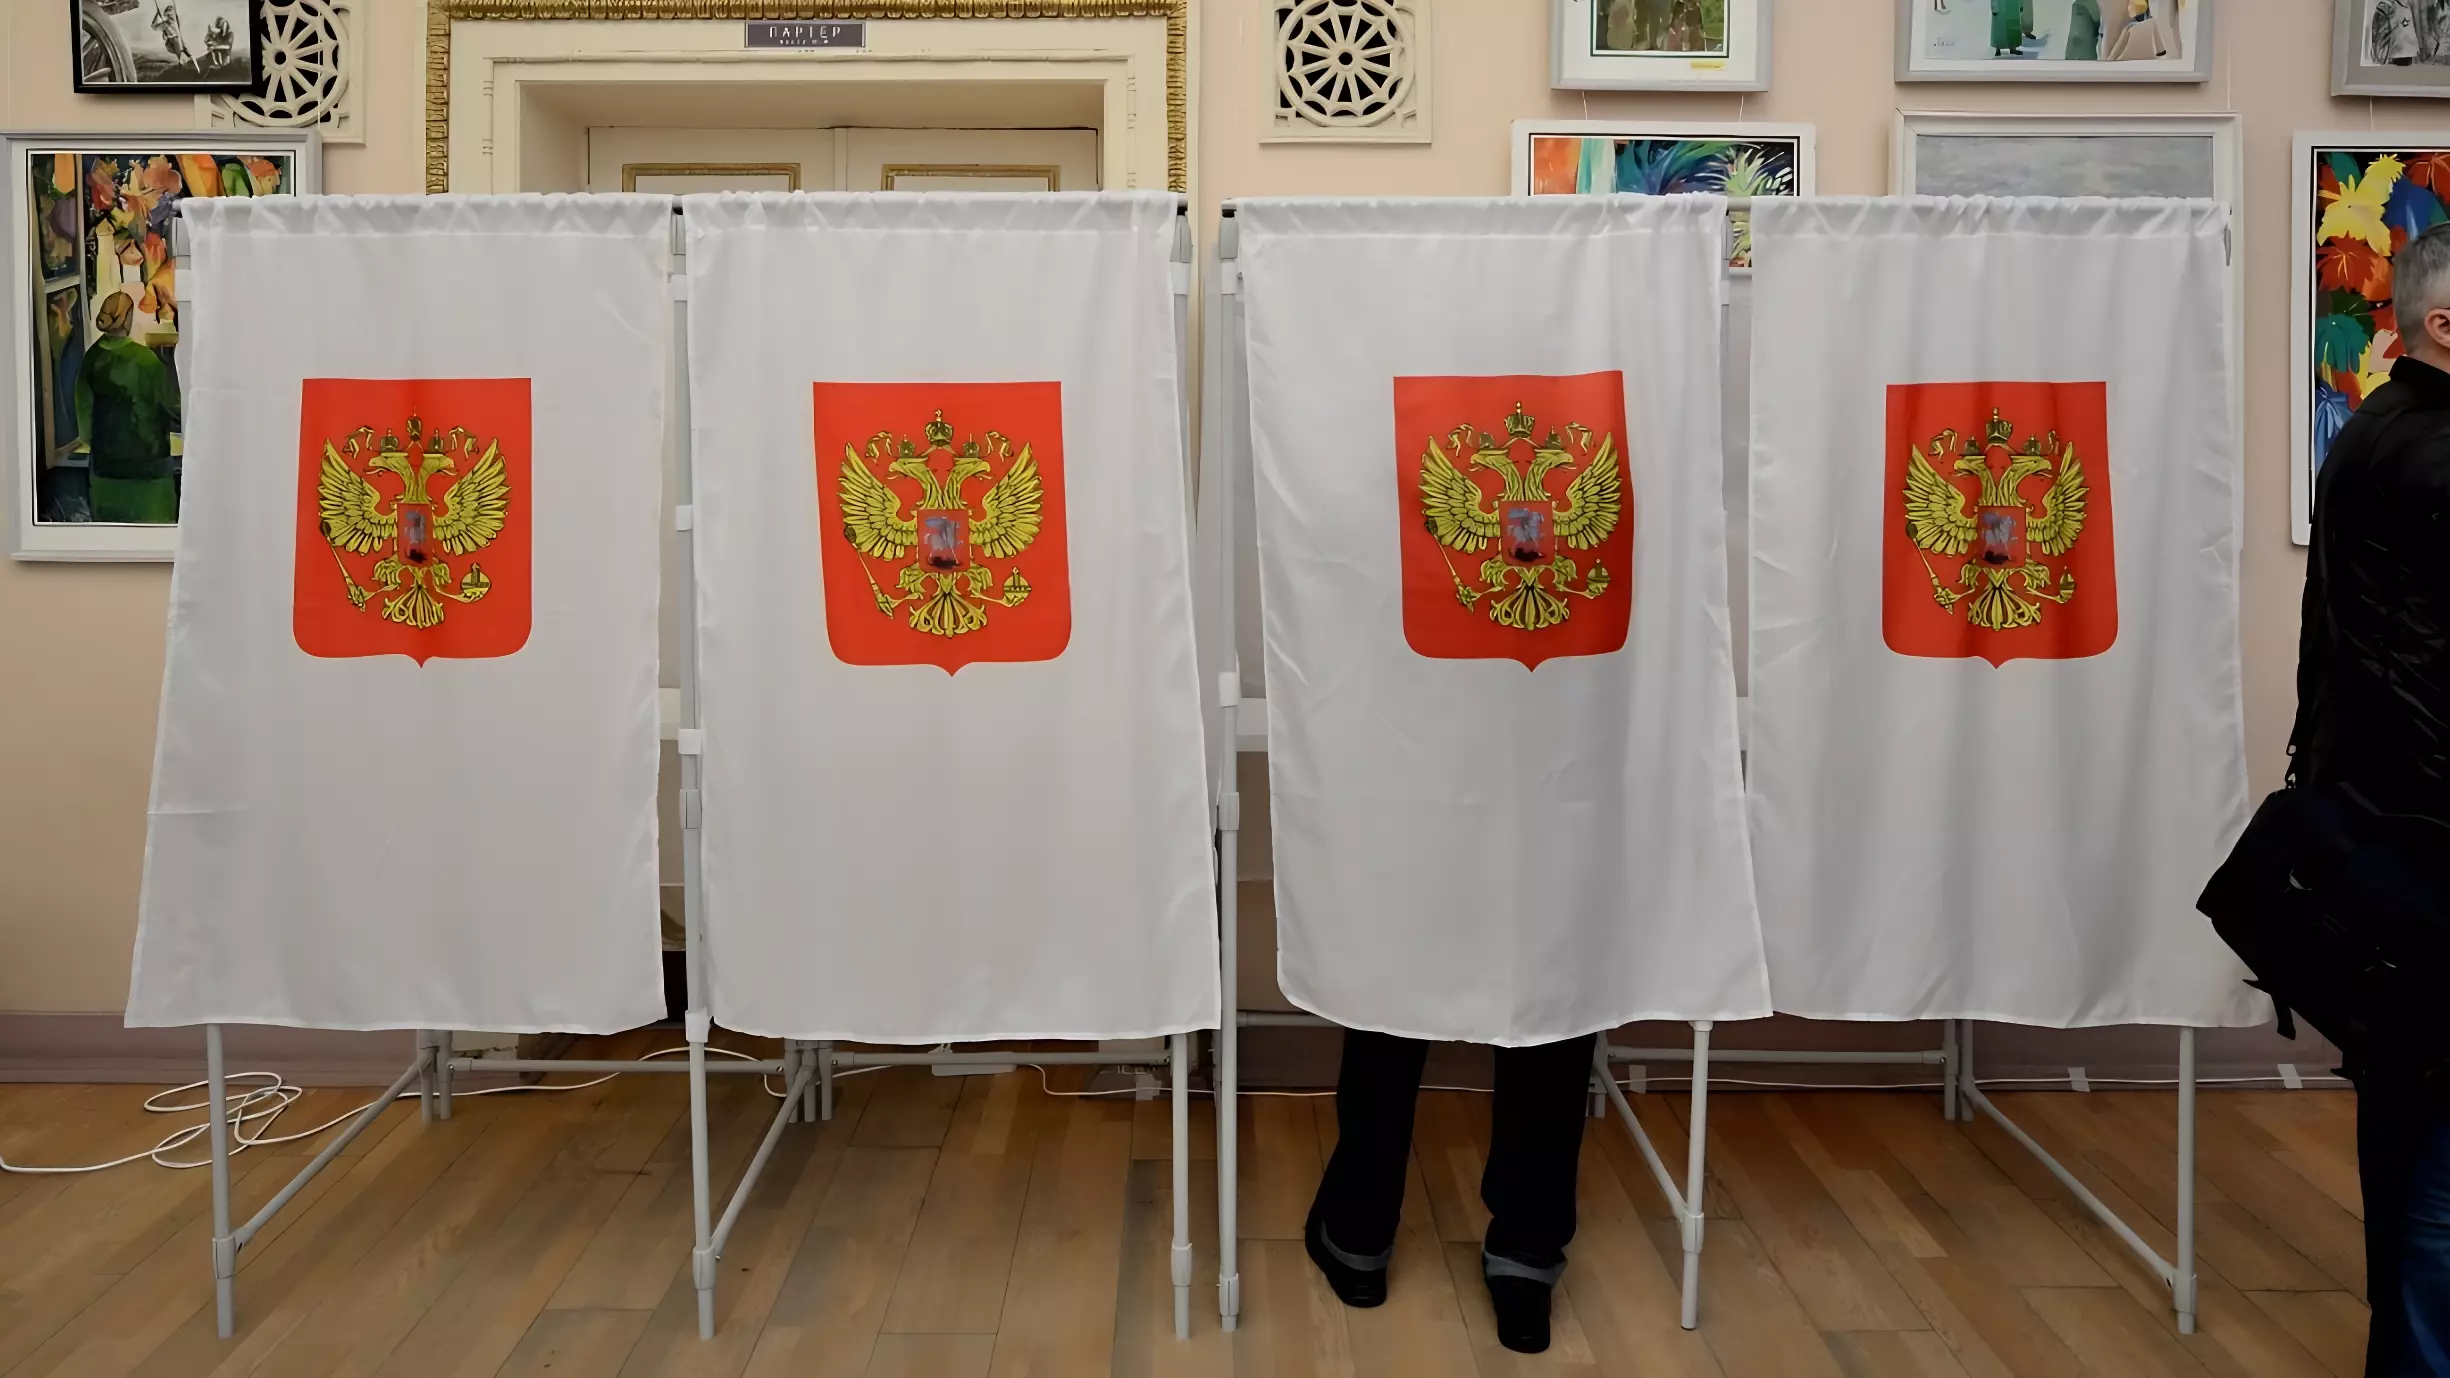 Названы самые активные районы Новосибирска по голосованию на выборах президента